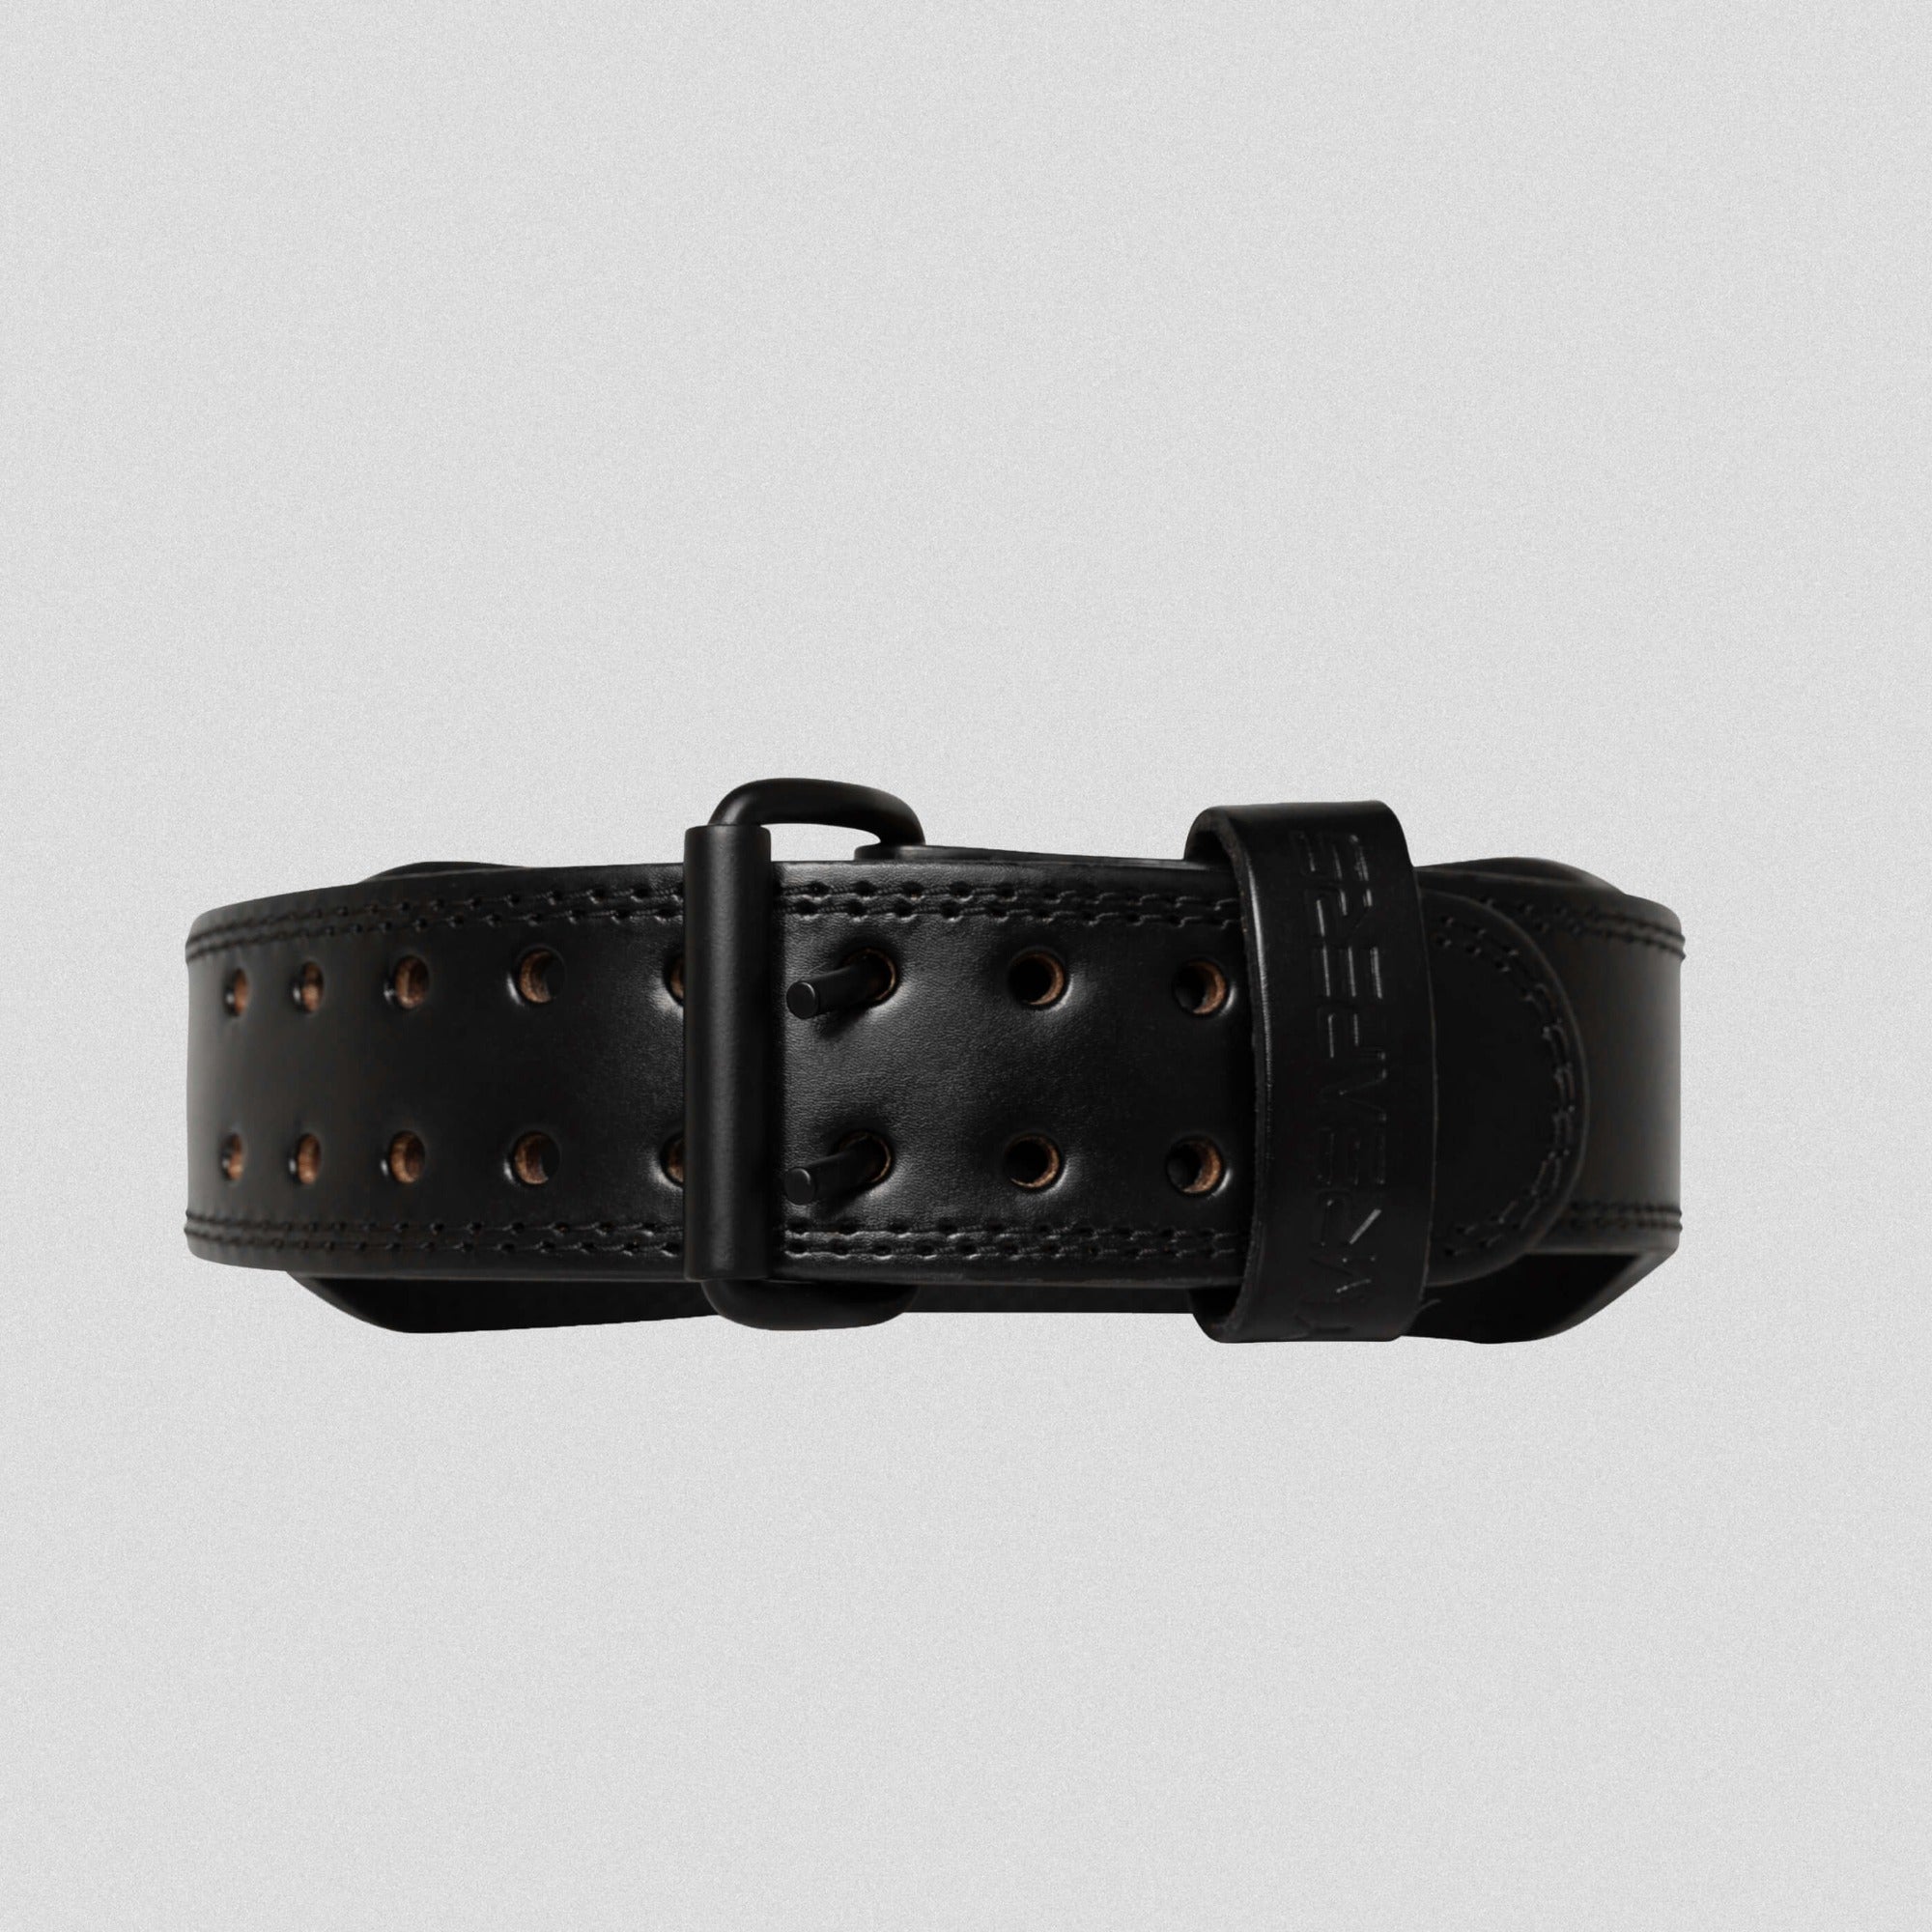 7mm belt black front